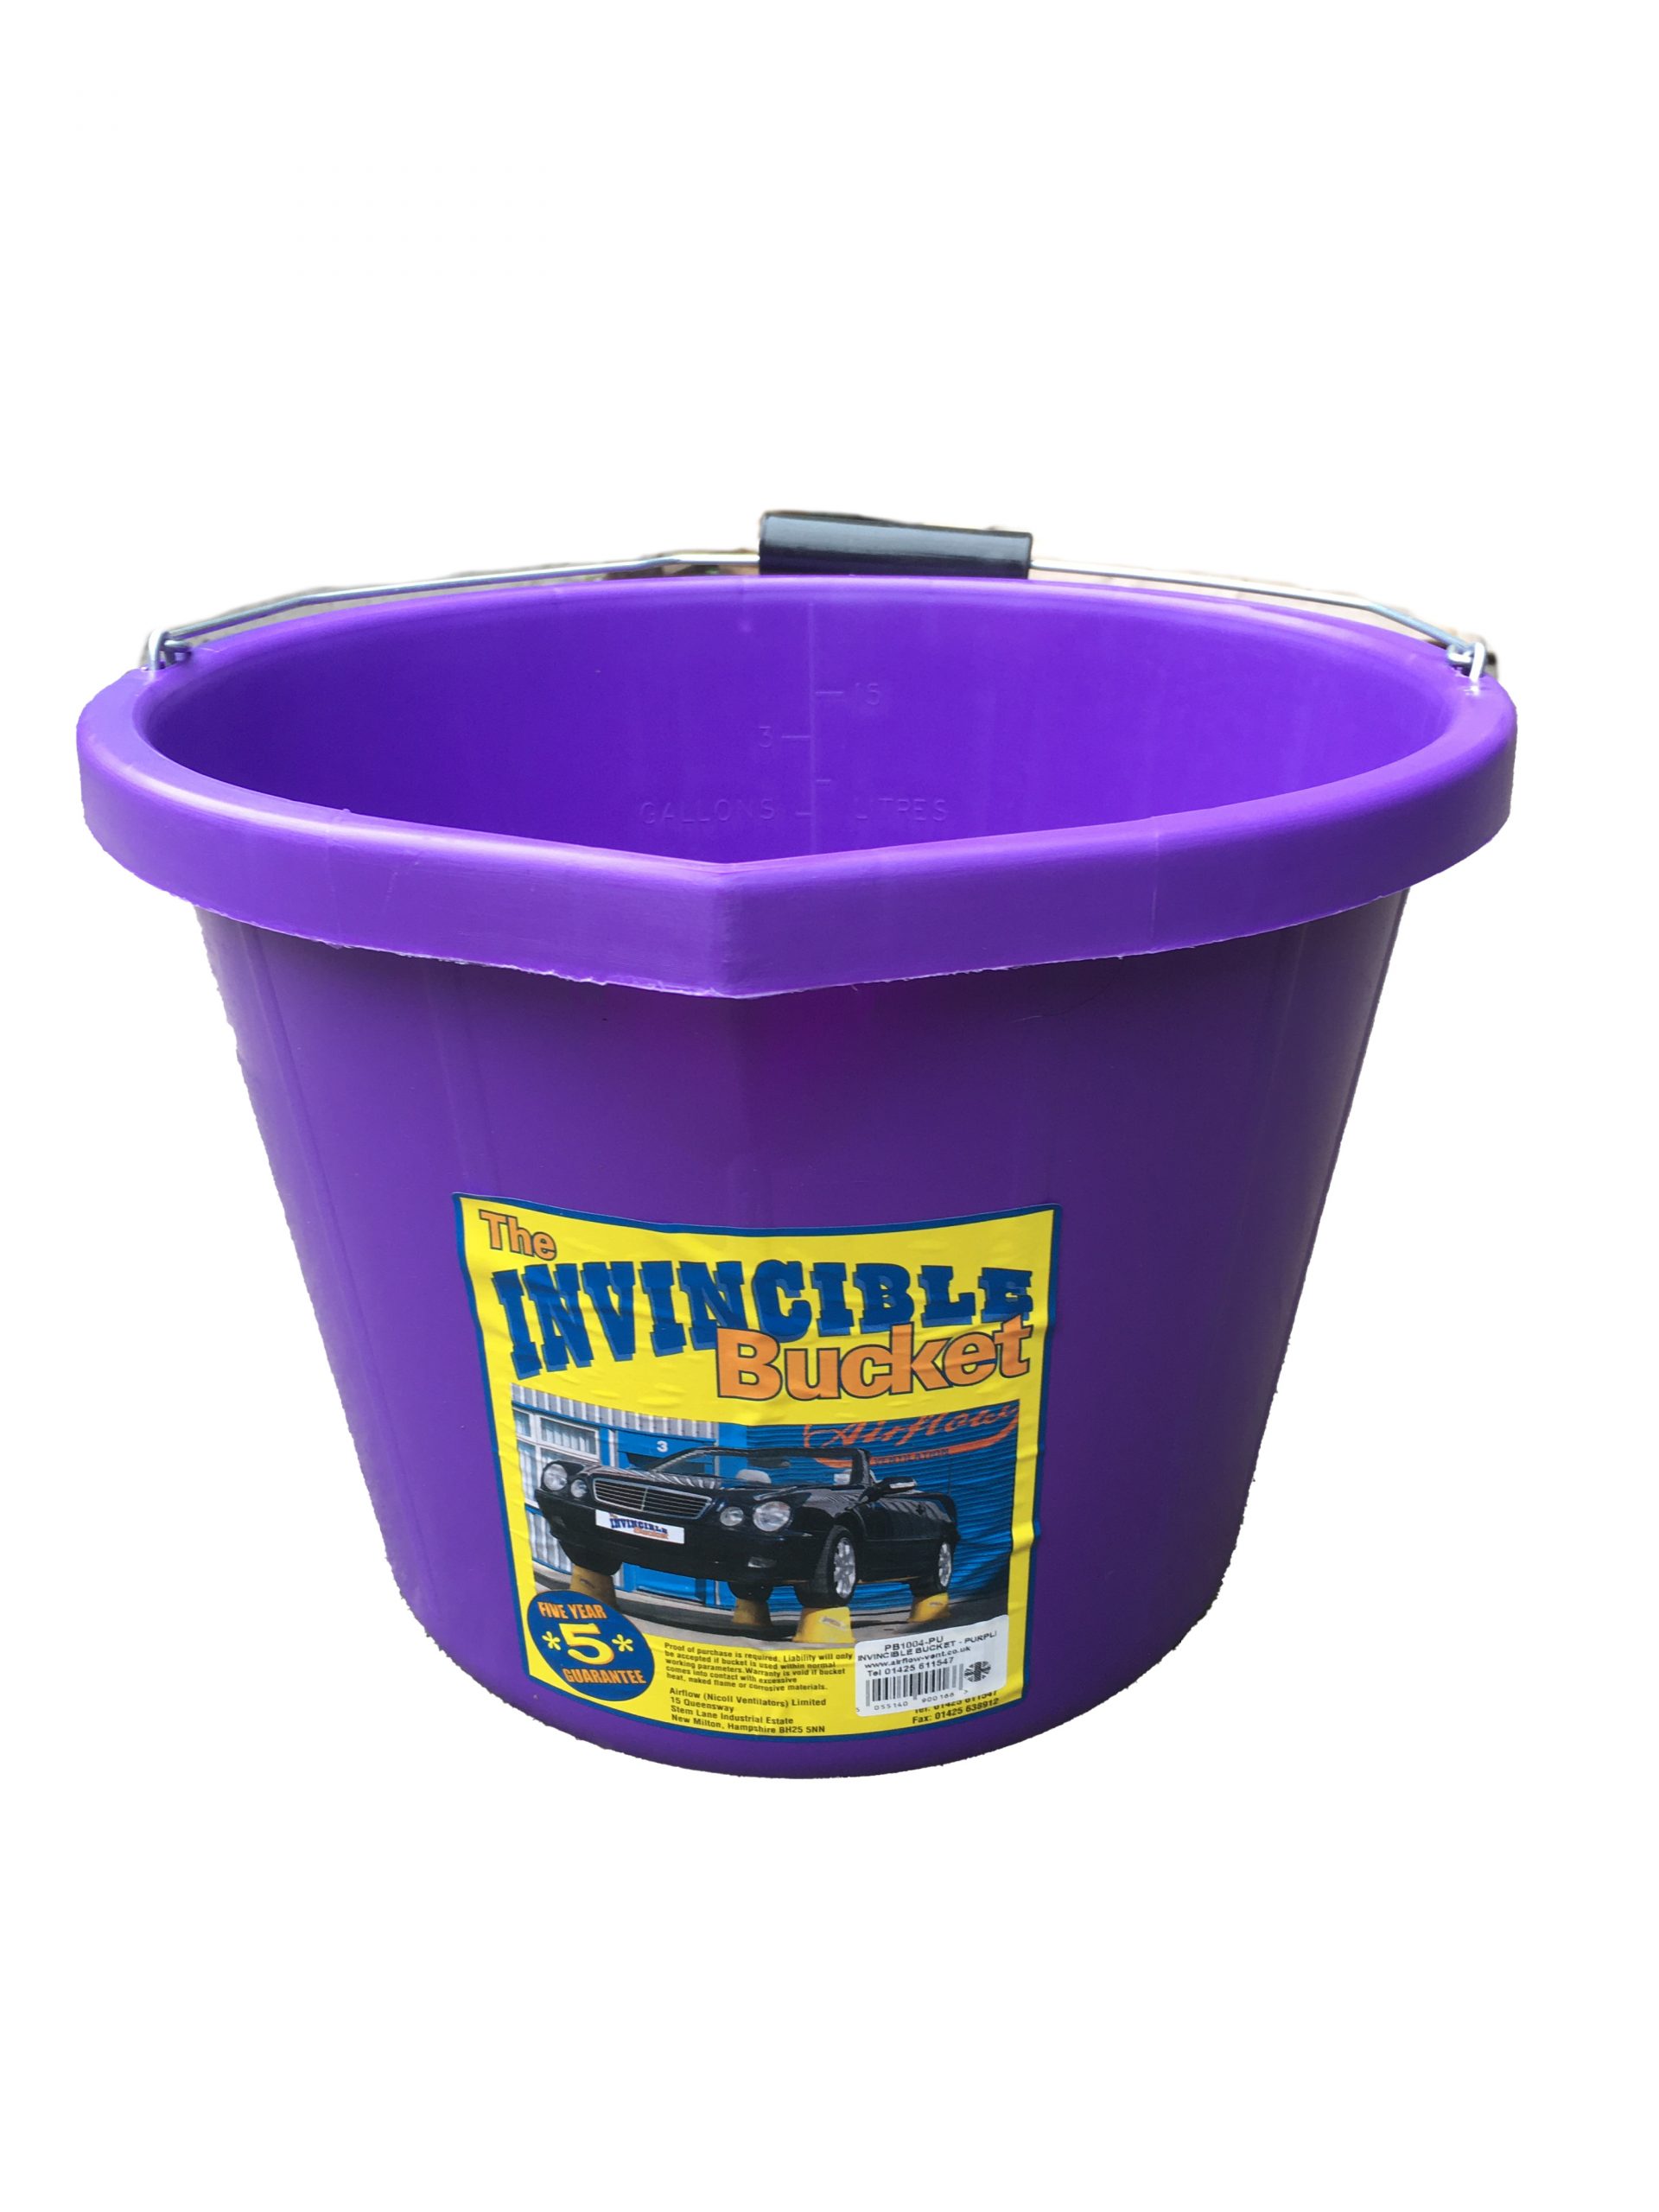 PINK BUCKET 3 Gallon 15 Litres Plastic Builders Bucket (MADE IN UK )